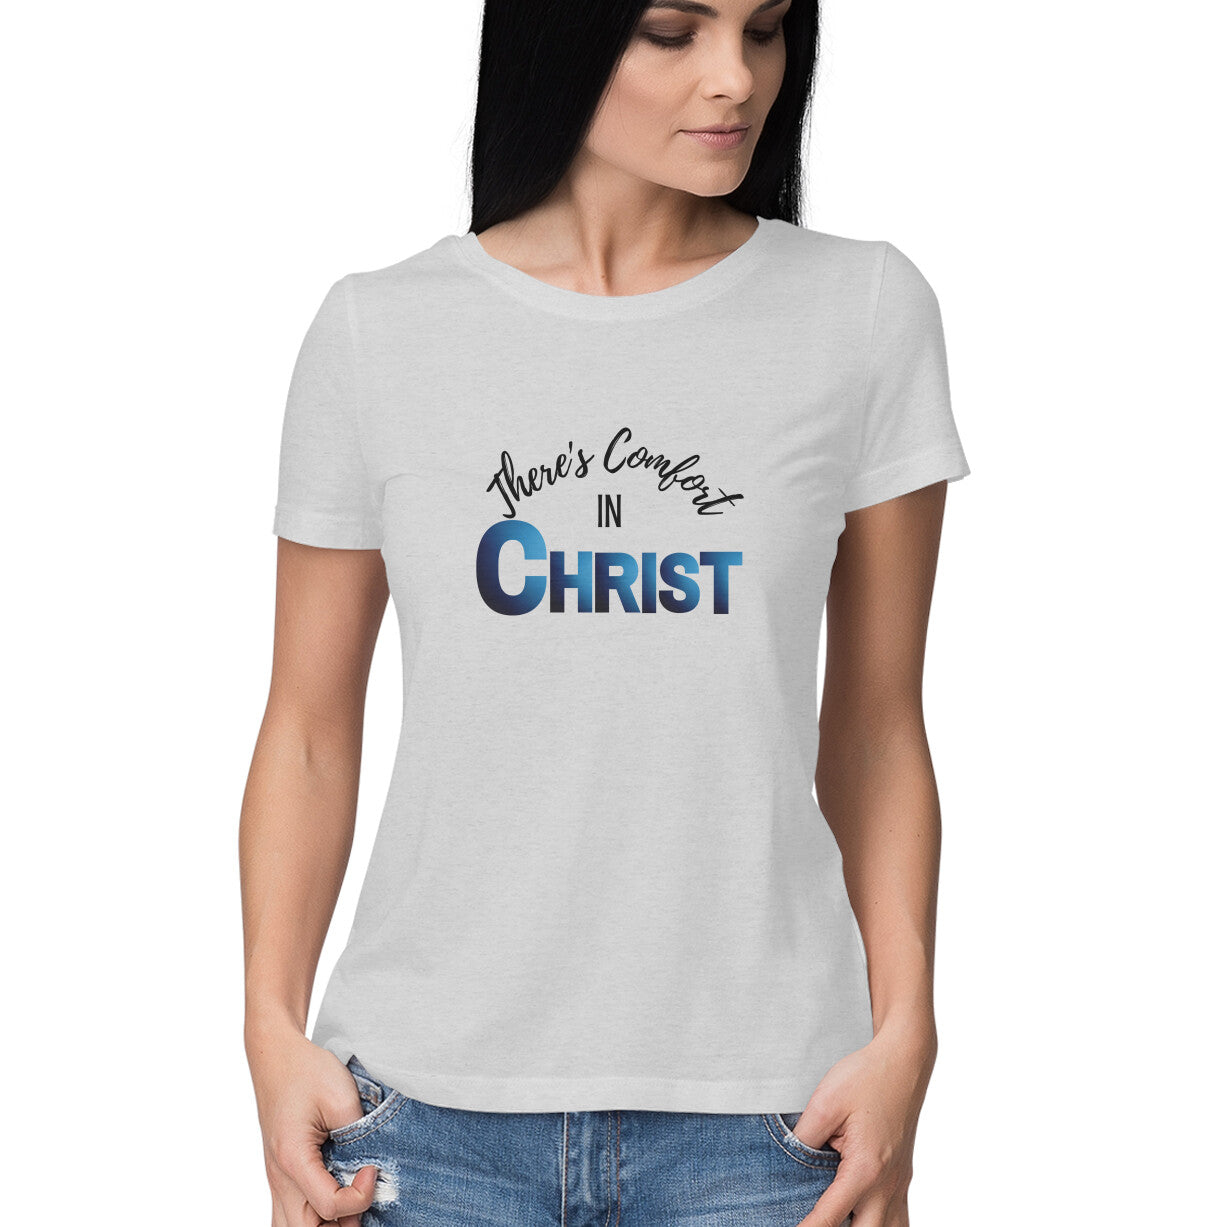 Comfort in Christ' Women's tee